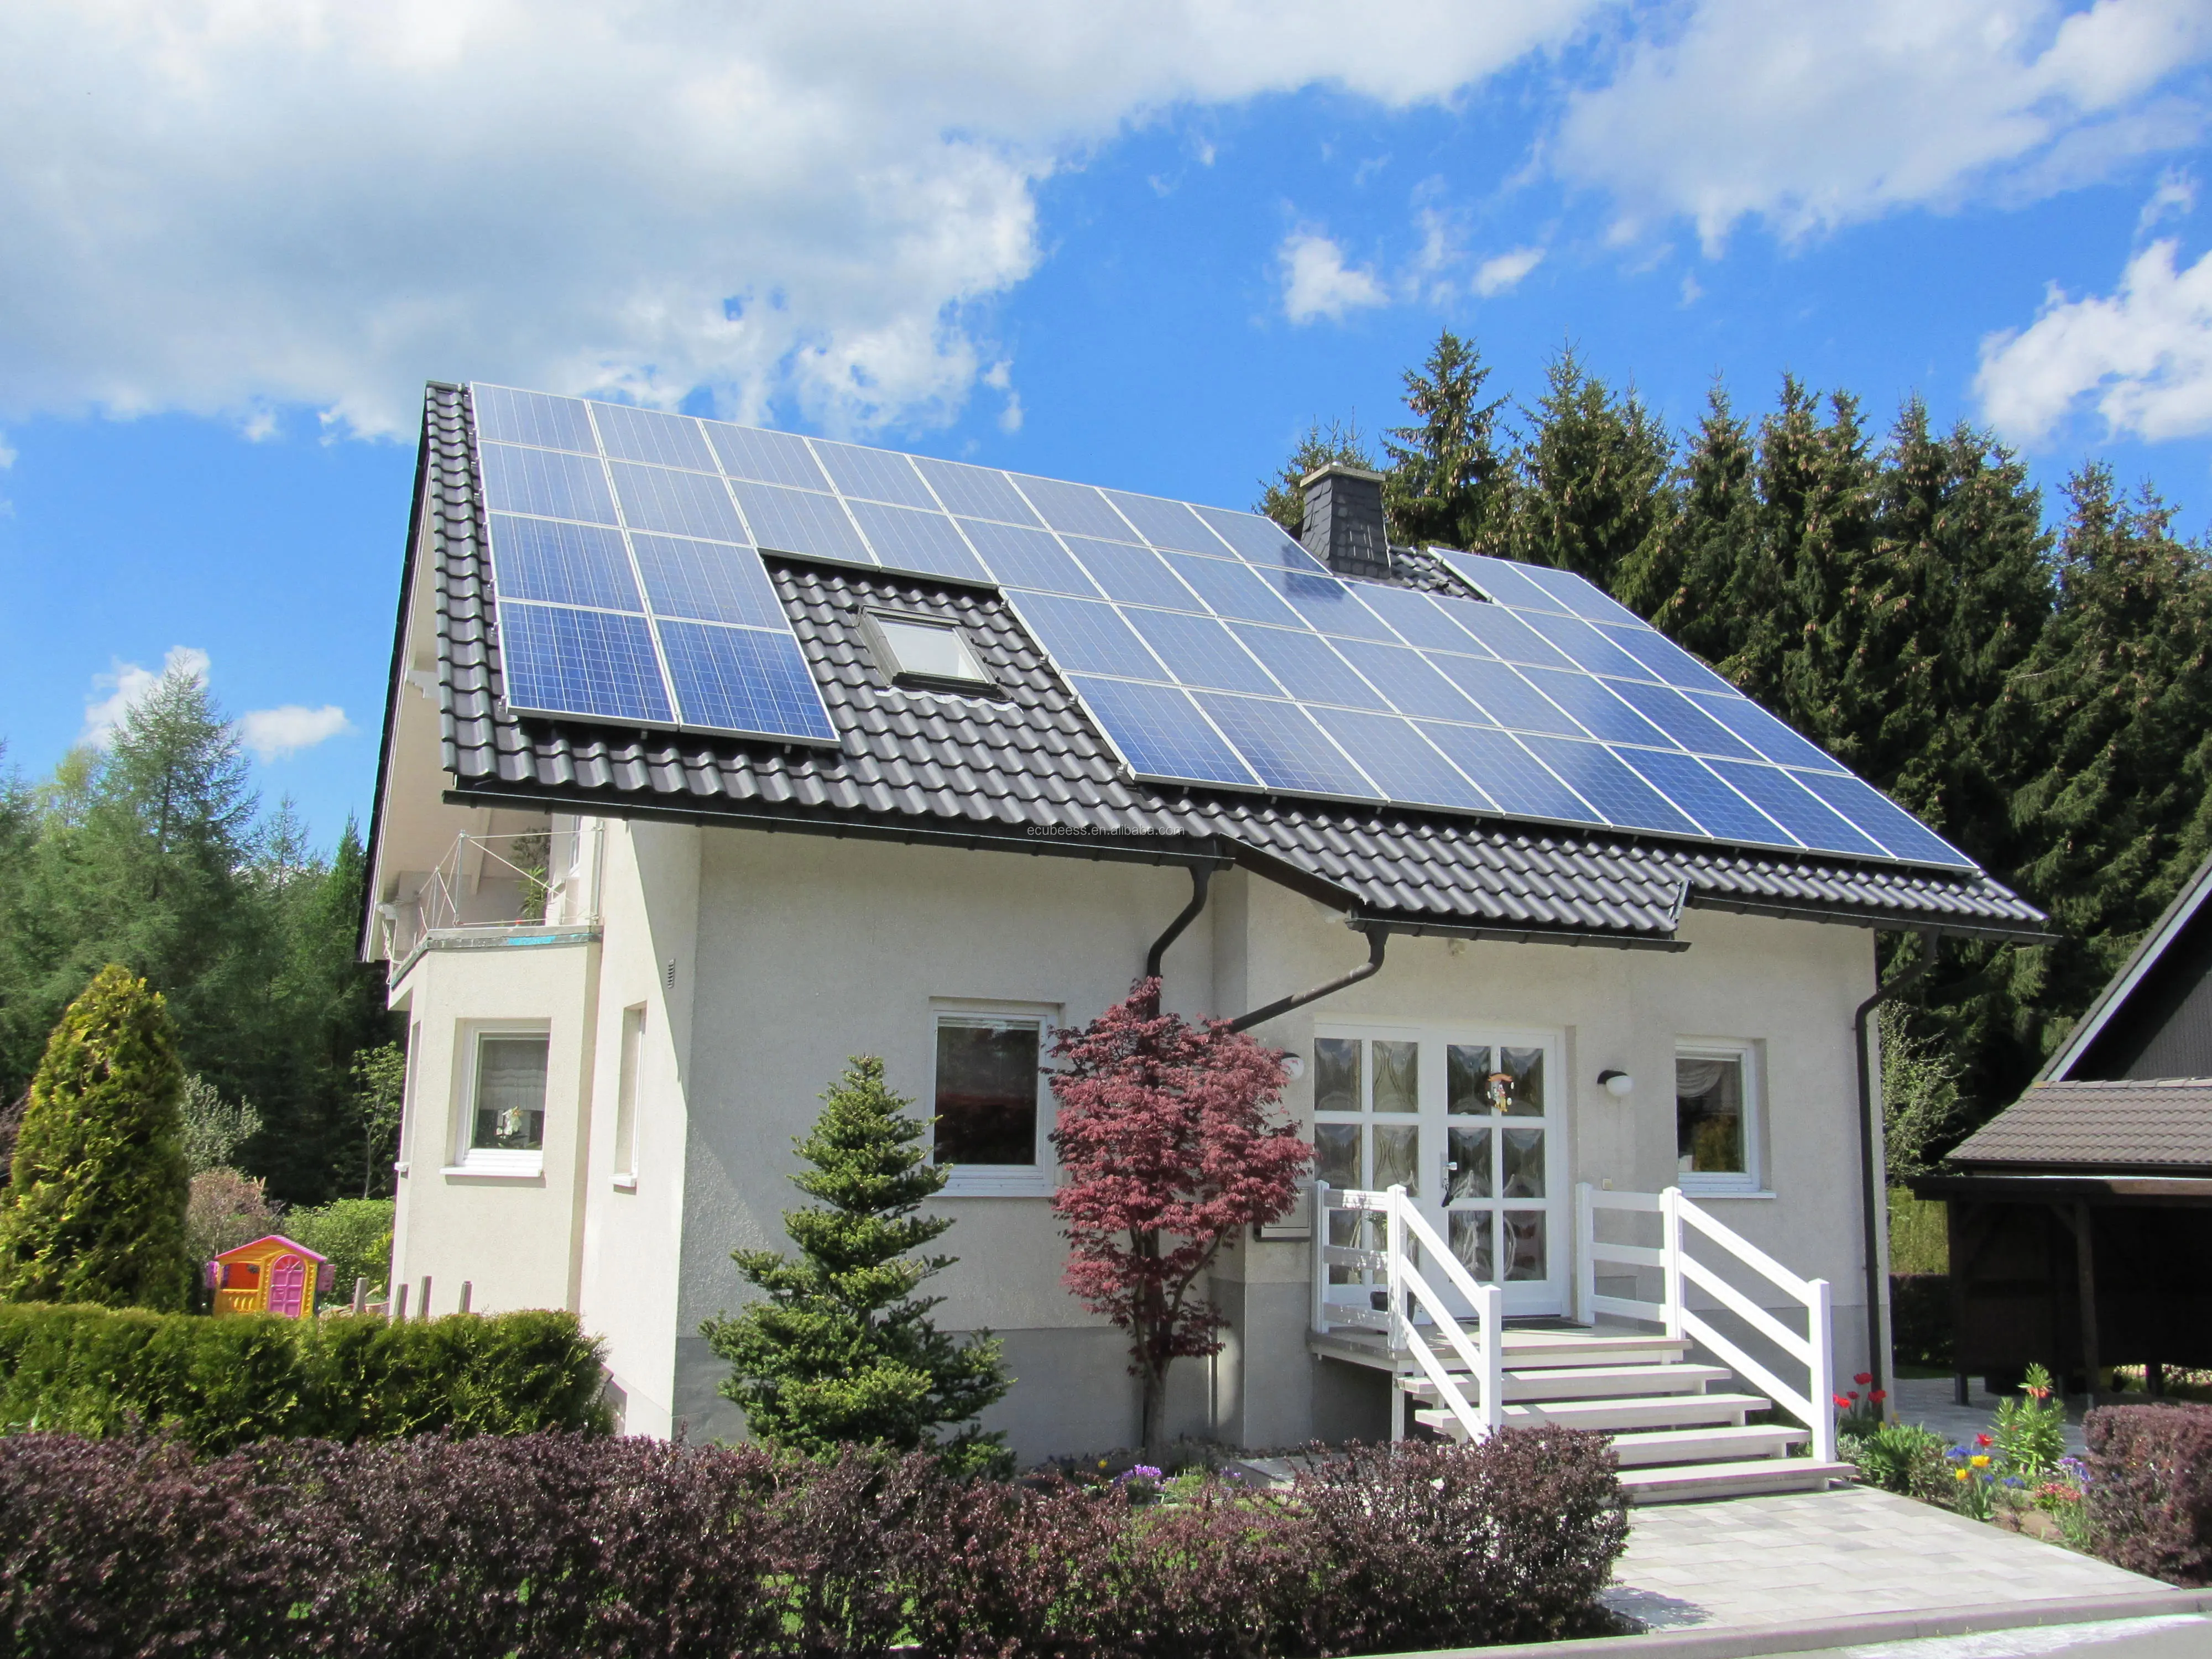 Вдом. Солнечные панели 10kw. Solar Panels on House. ЭКОДОМ С солнечными батареями. Дом с солнечными панелями.